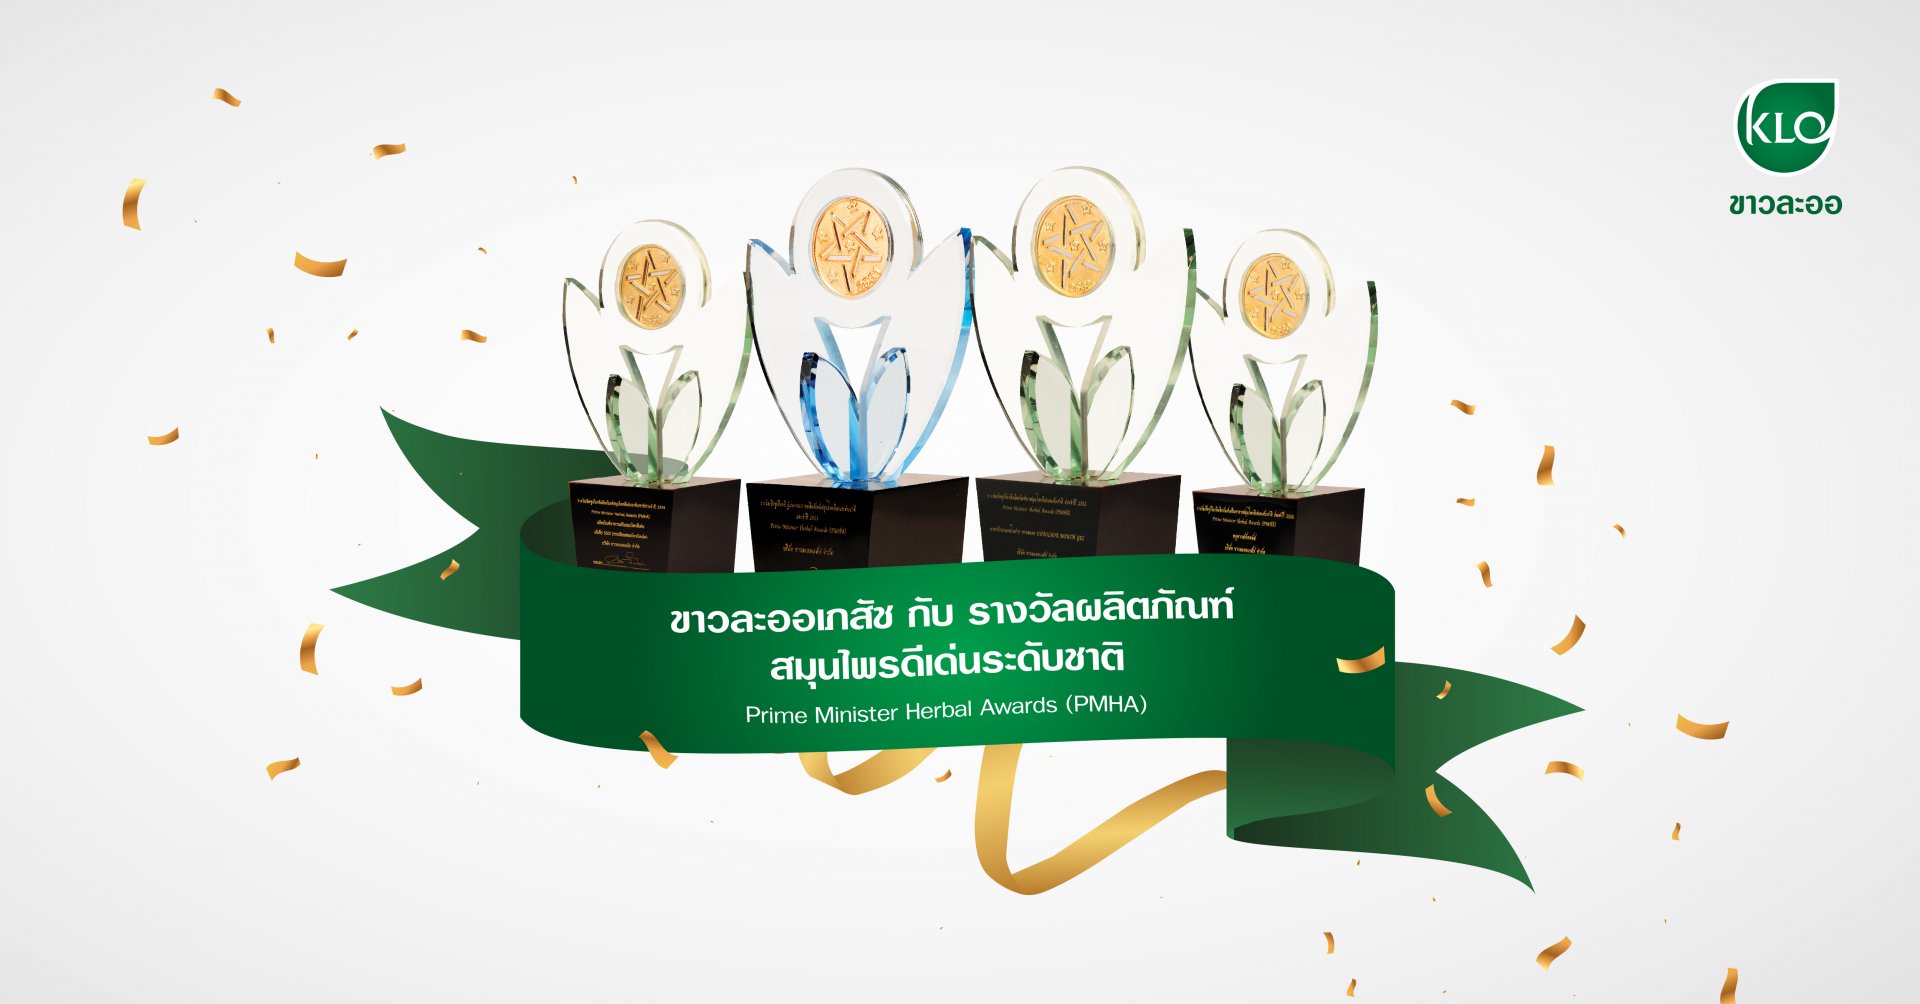 ขาวละออเภสัช กับ รางวัลผลิตภัณฑ์สมุนไพรดีเด่นระดับชาติ Prime Minister Herbal Awards (PMHA)